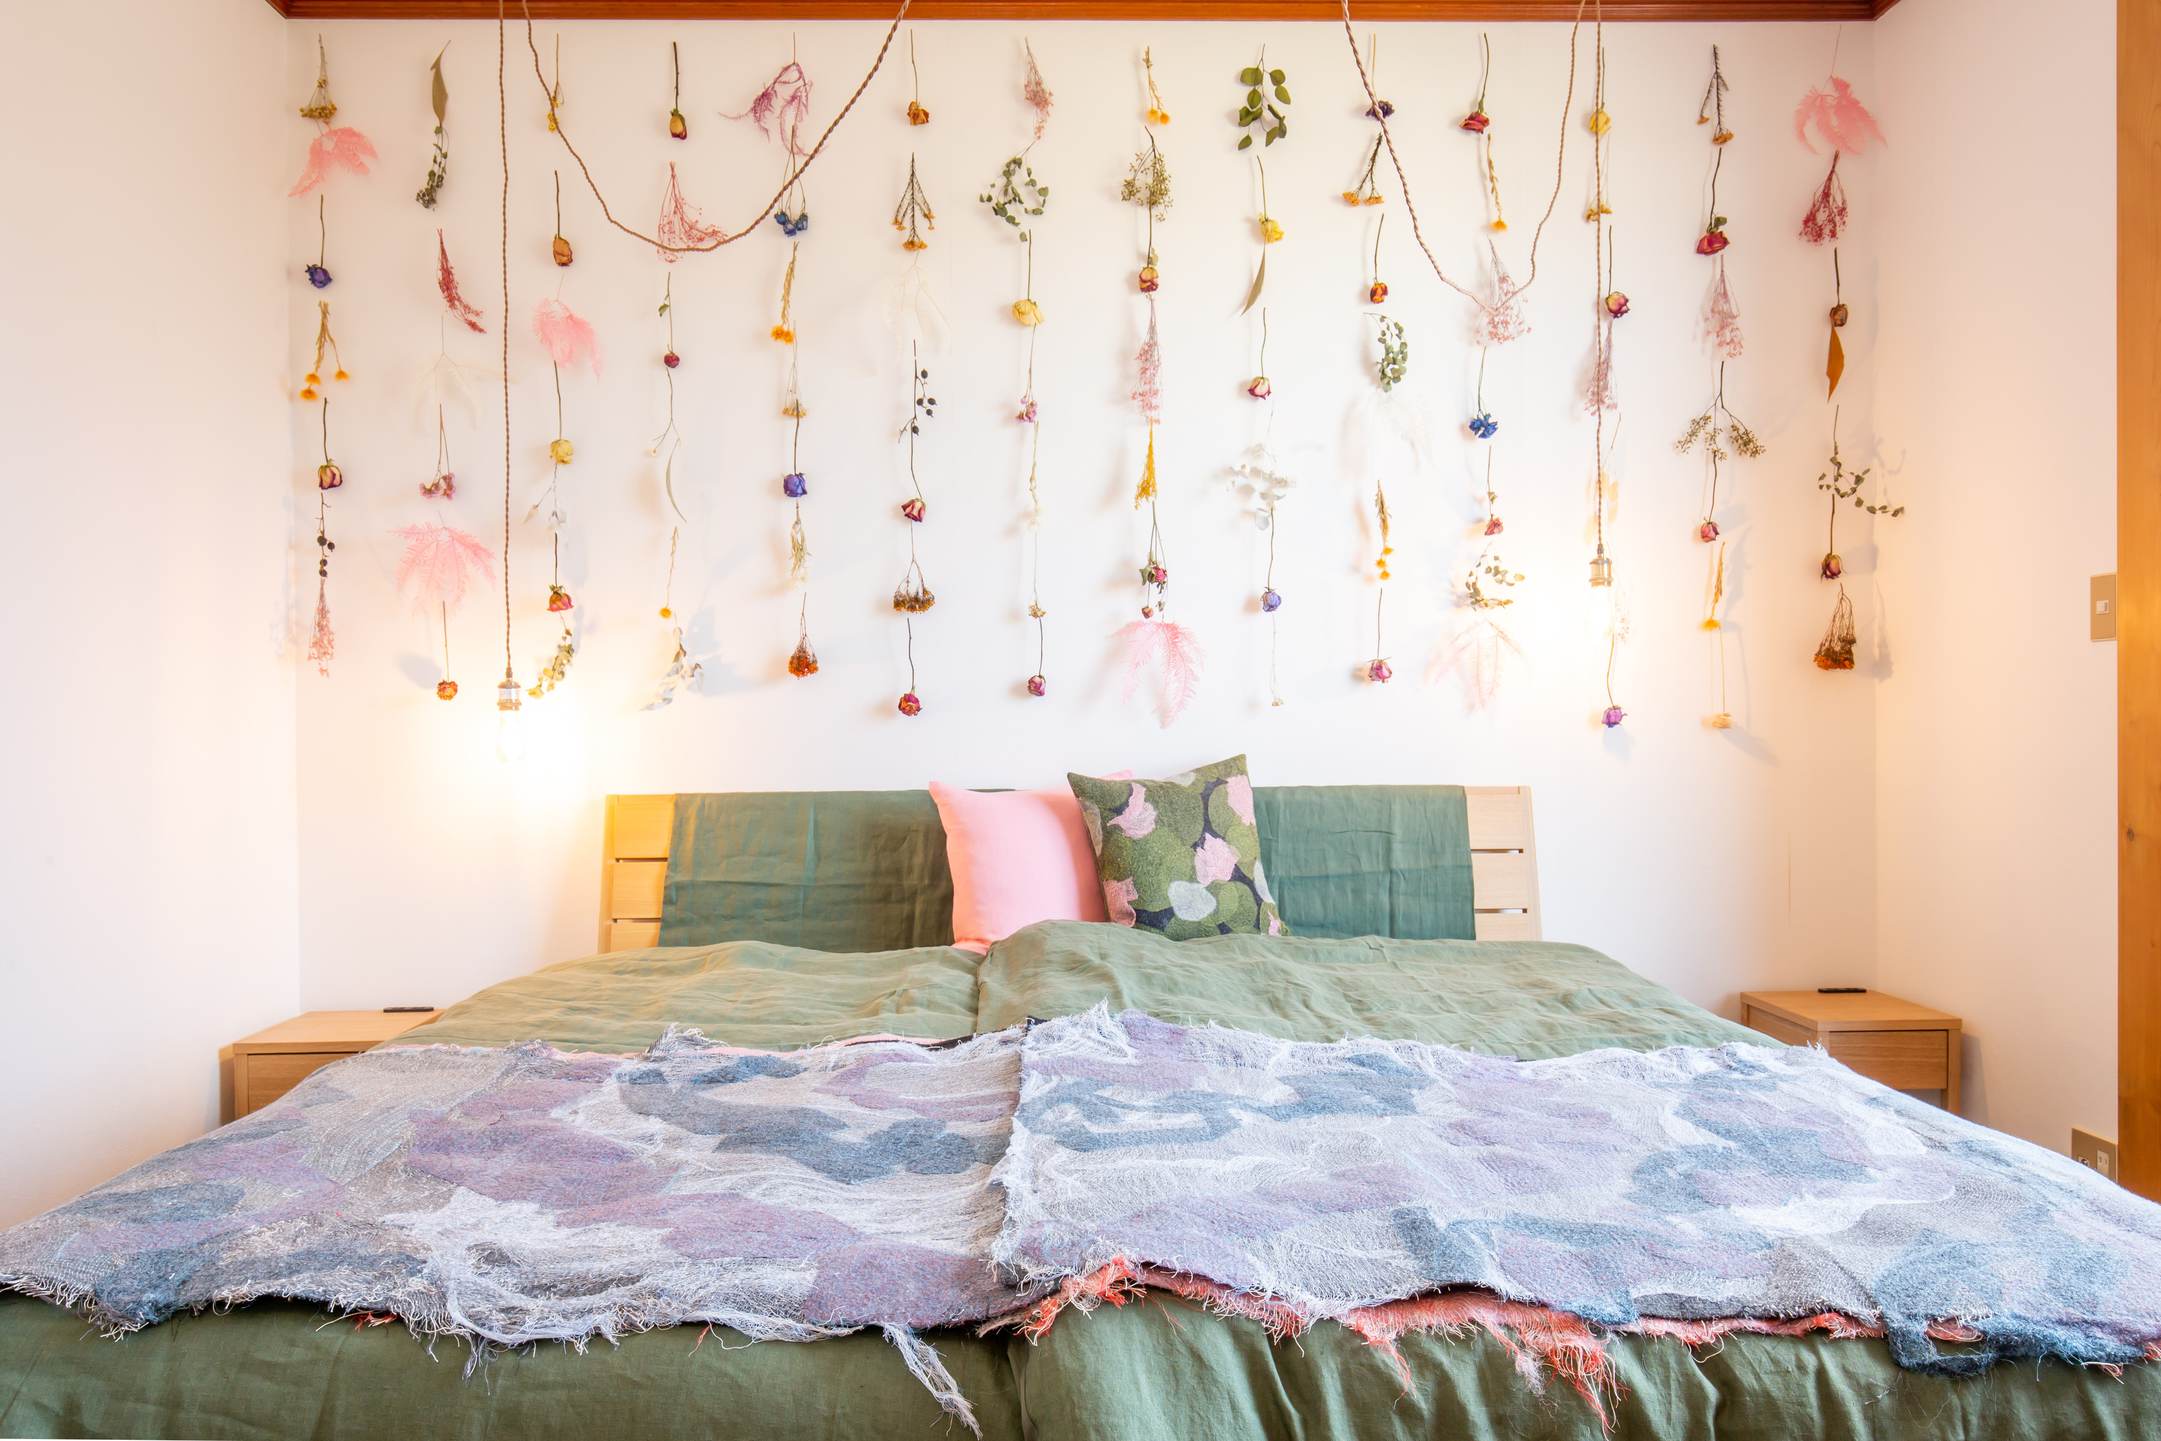 【２F寝室】富士吉田のシンボルをテーマにしたお部屋